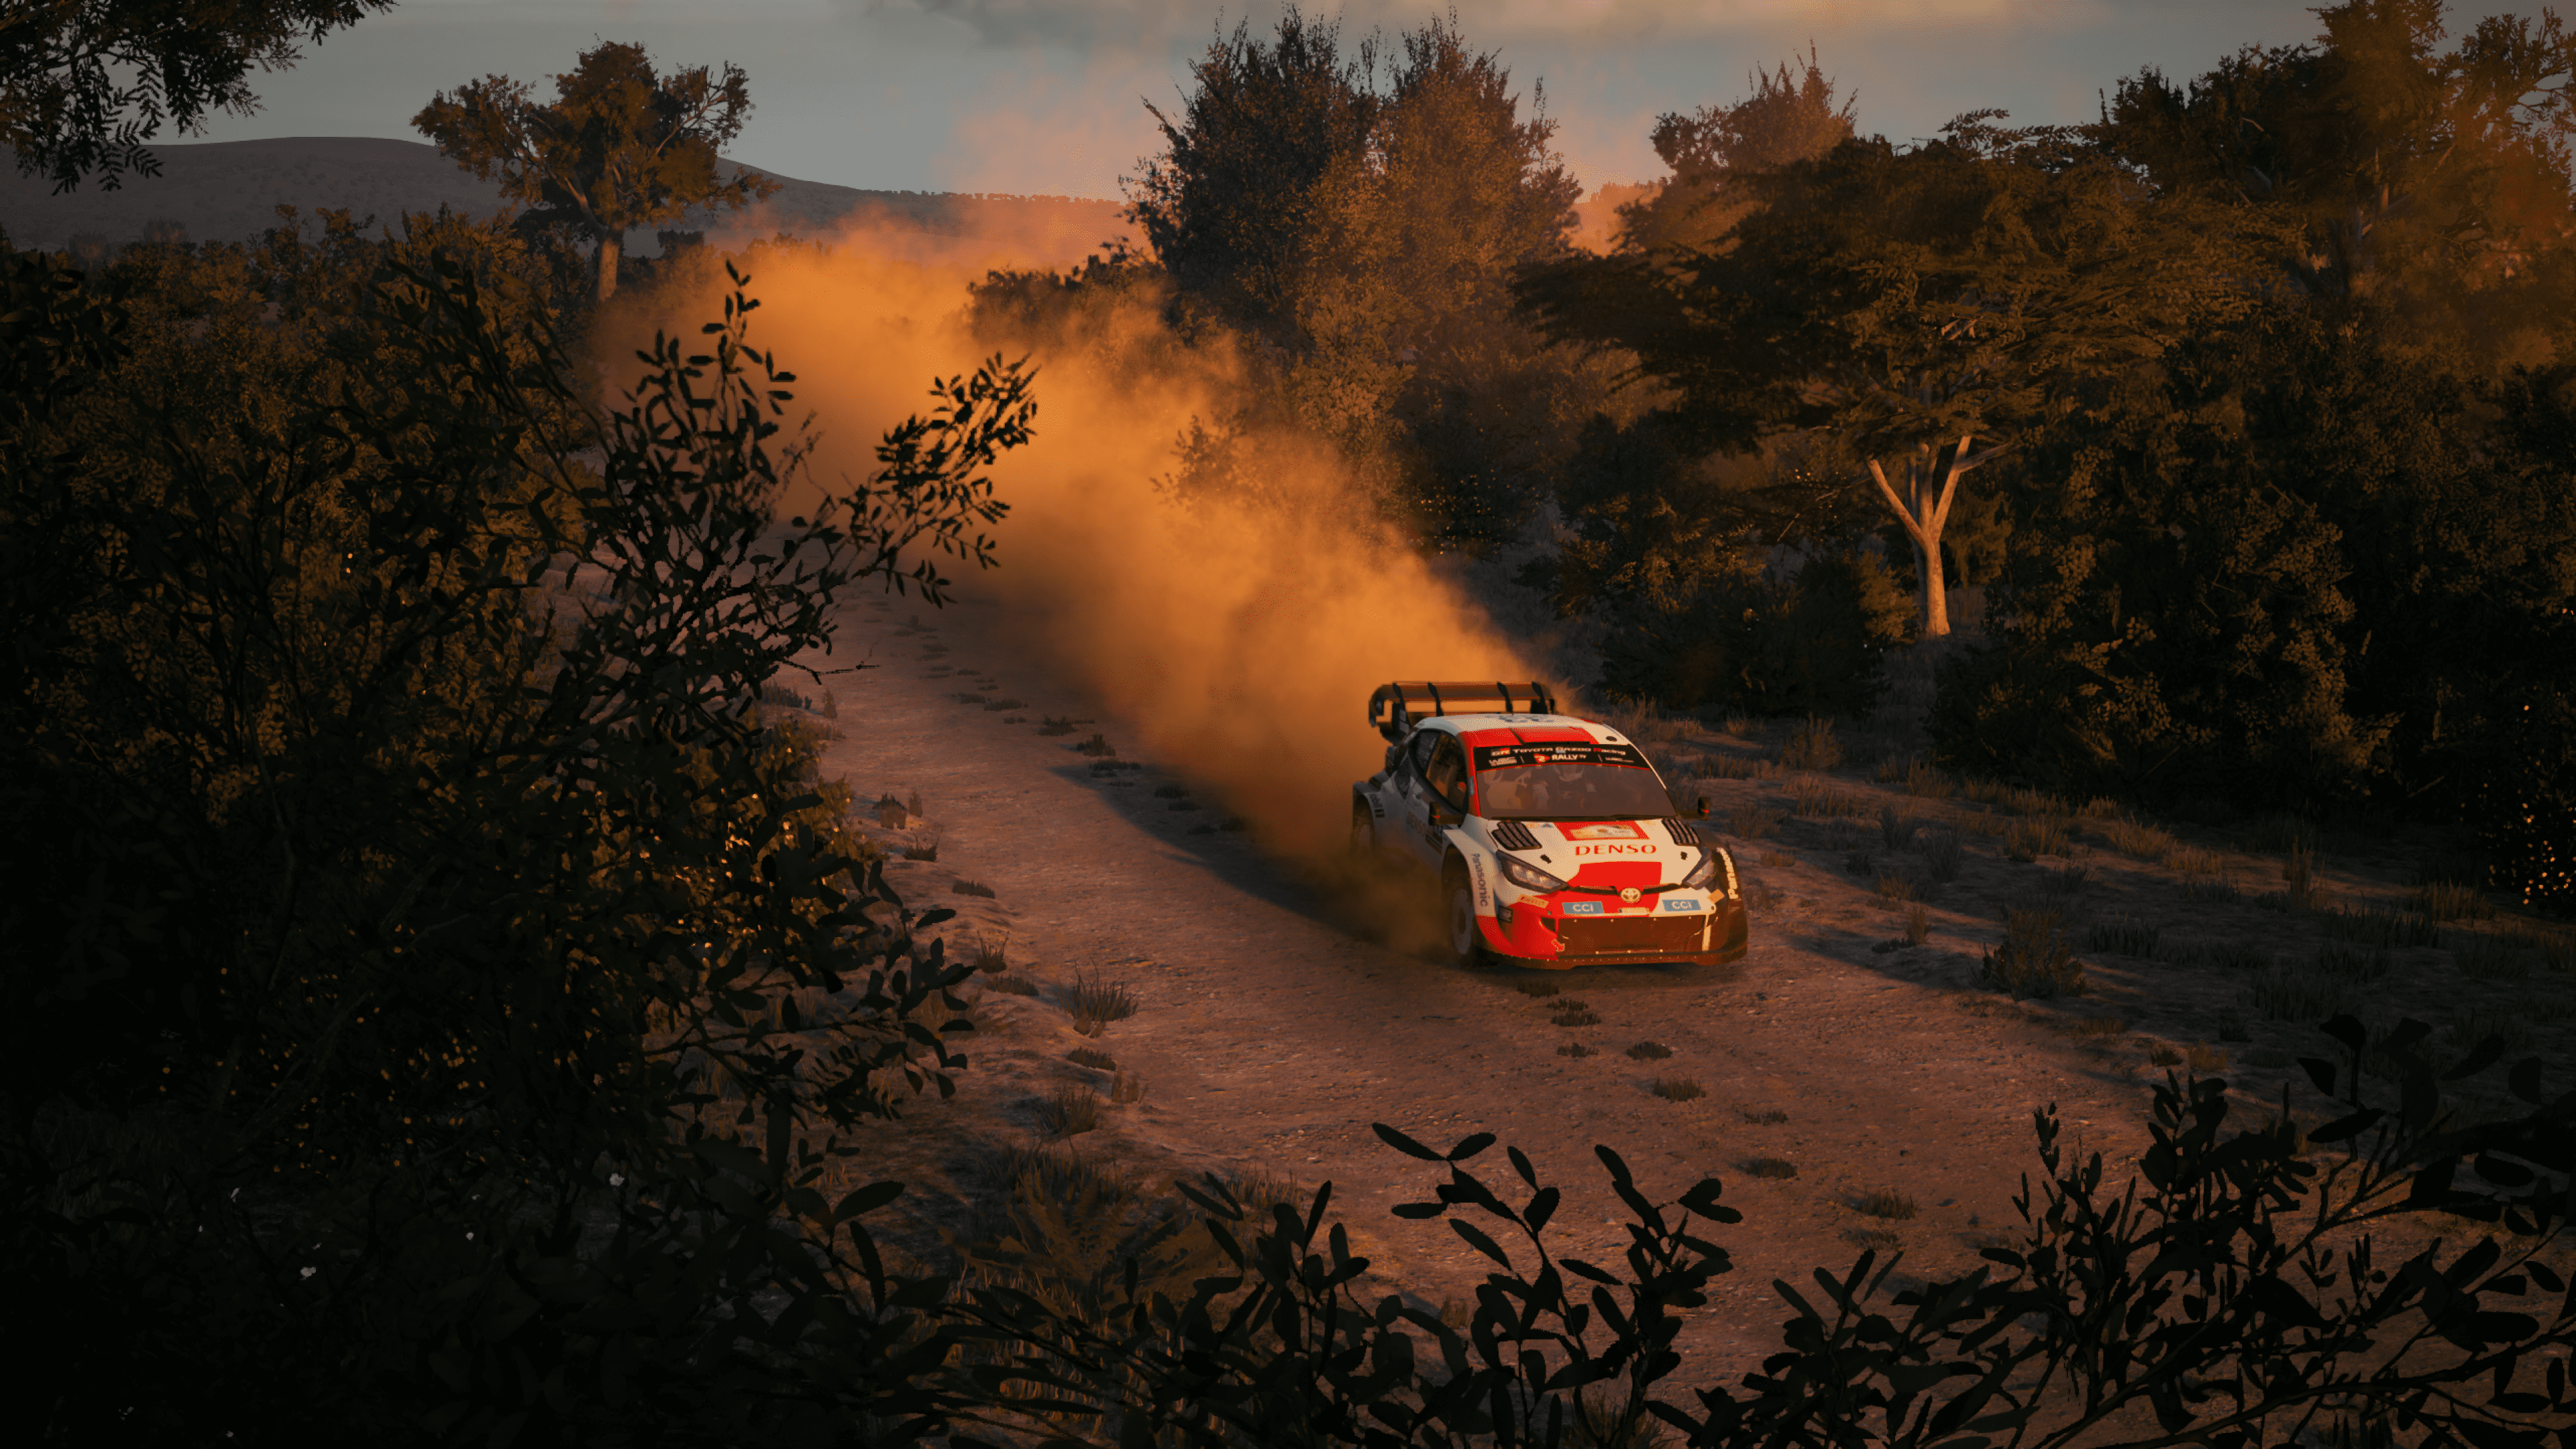 Obrázek XSX - EA Sports WRC